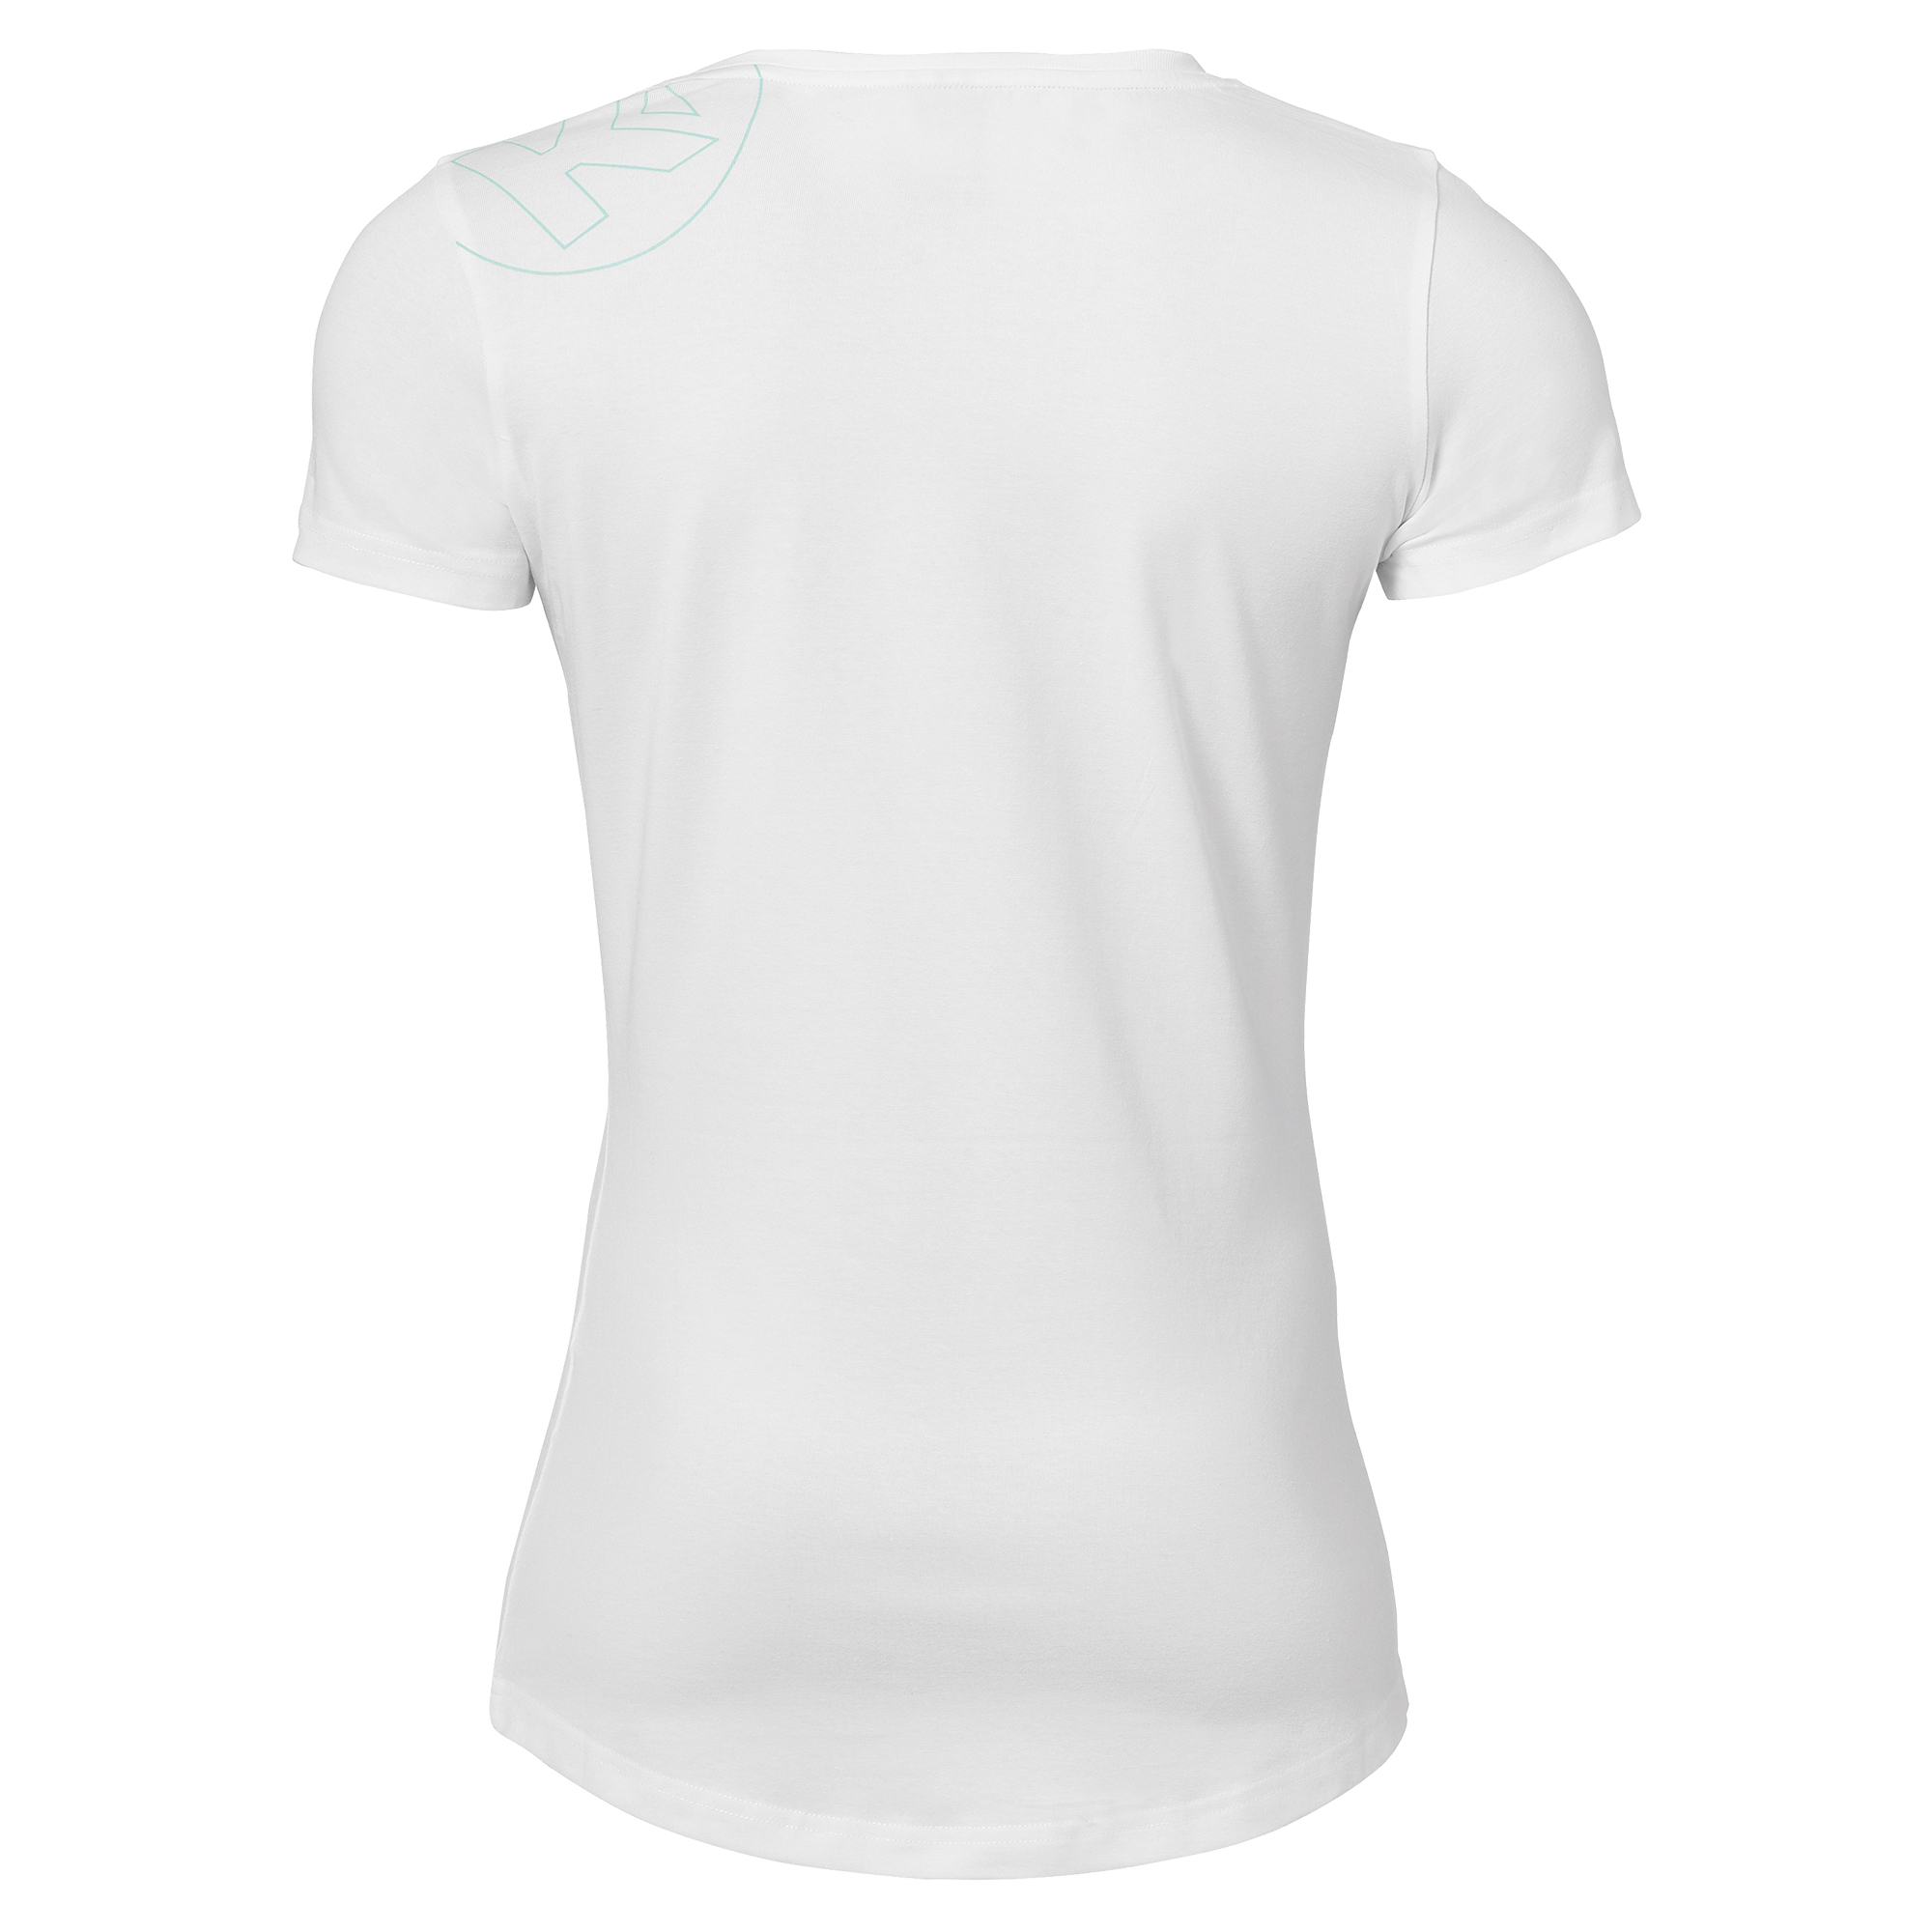 Kempa Graphic T-Shirt Damen